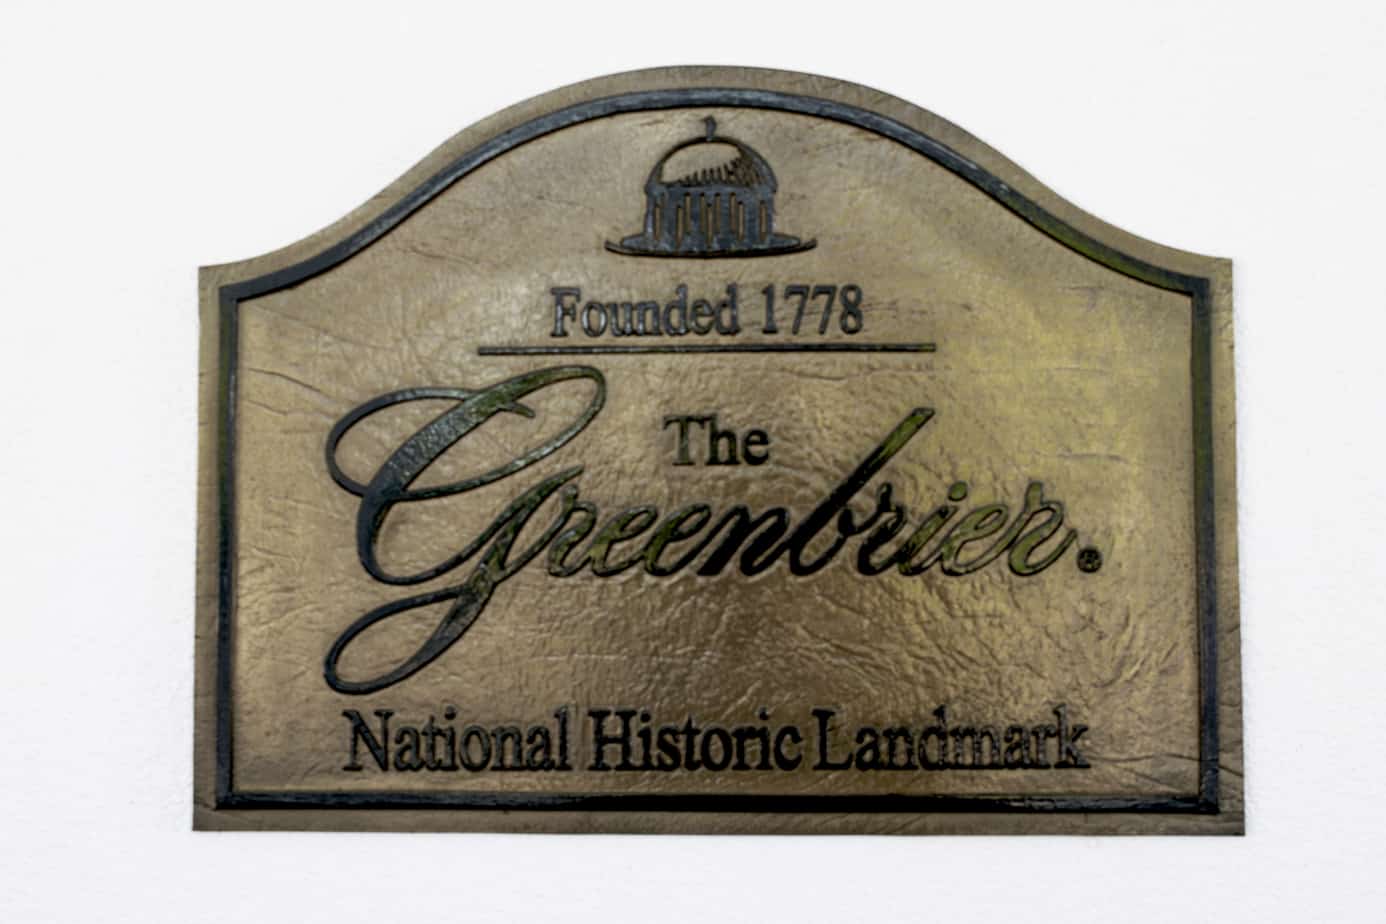 The Greenbrier National Historic Landmark